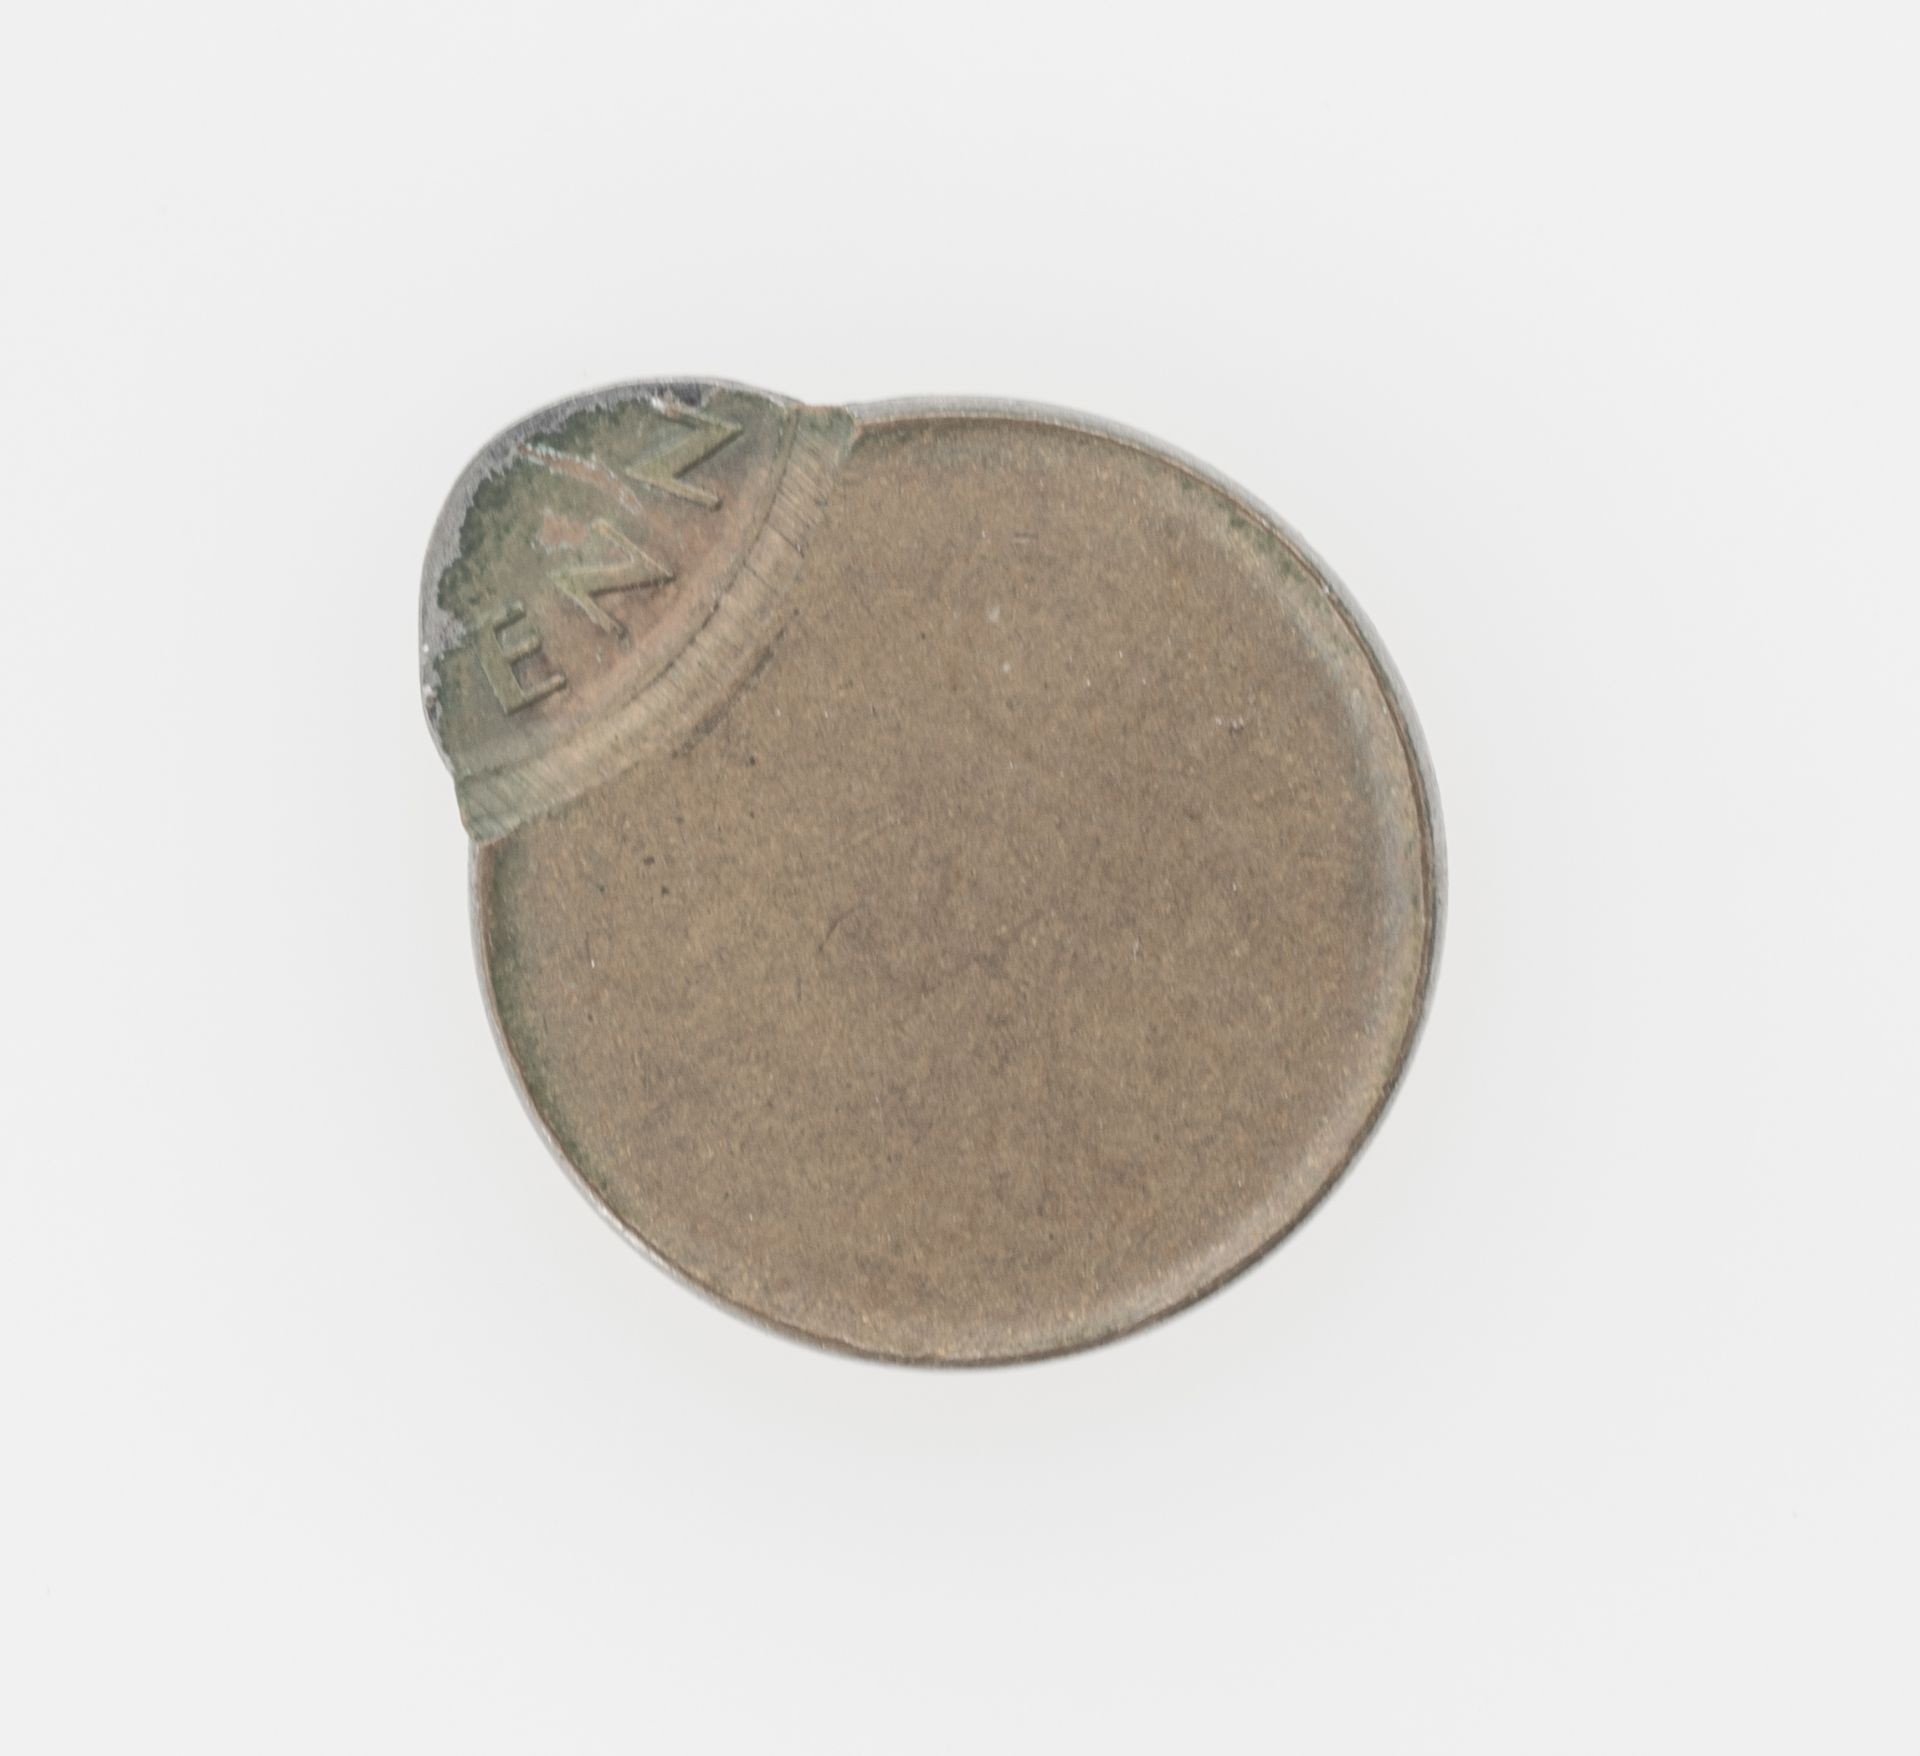 BRD 1969, 1 Pfennig - Münze Fehlprägung: Schrötling beidseitig dezentral geprägt. - Bild 2 aus 2